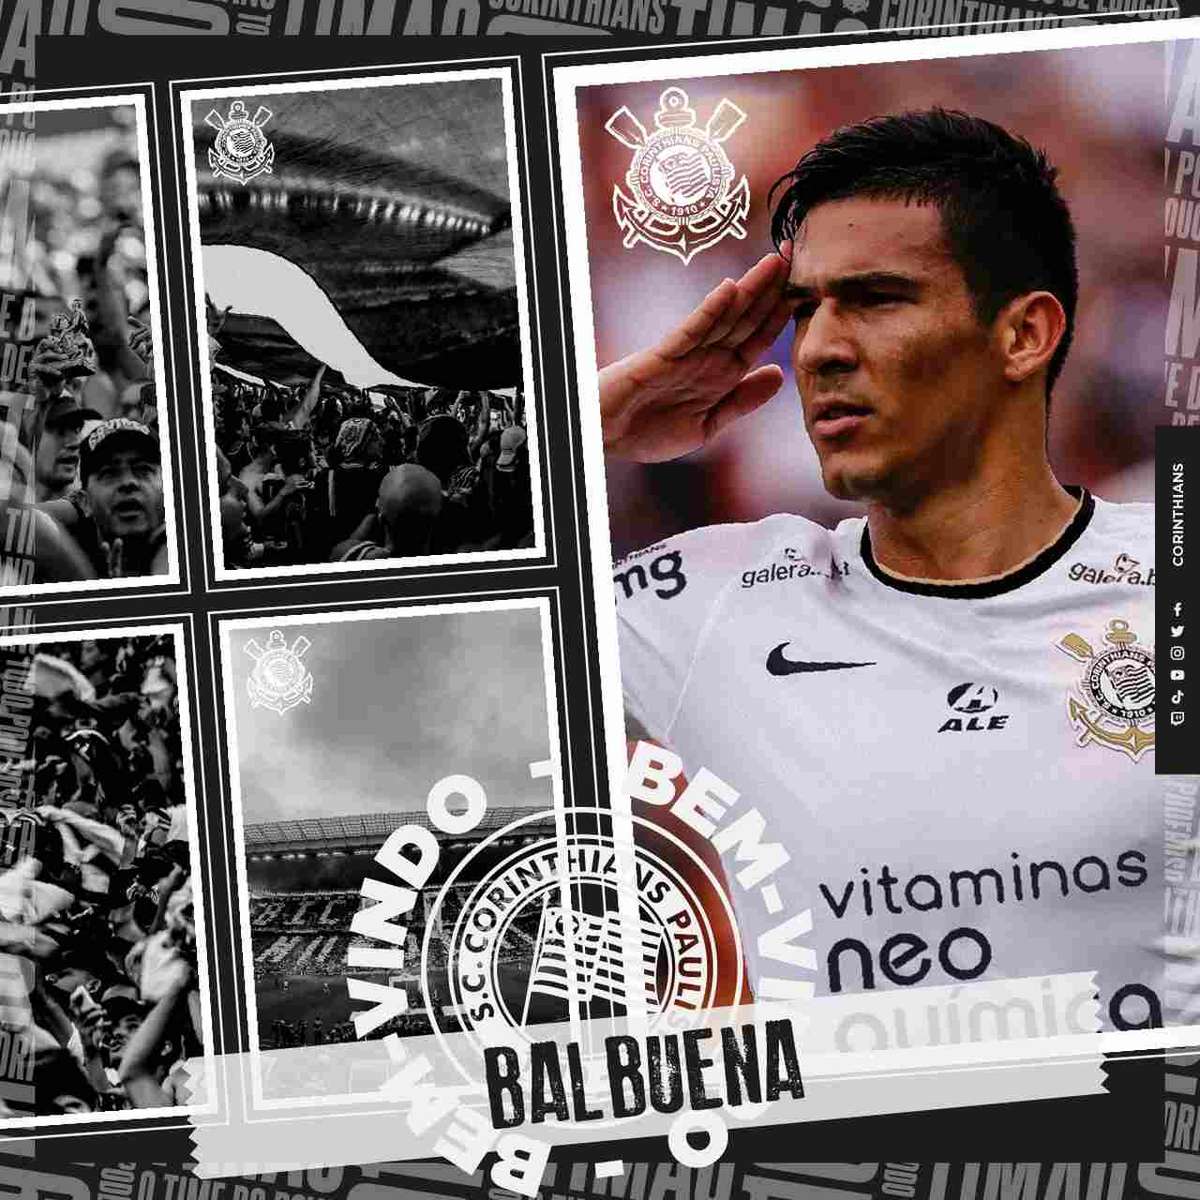 Quantos gol o Balbuena fez pelo Corinthians?